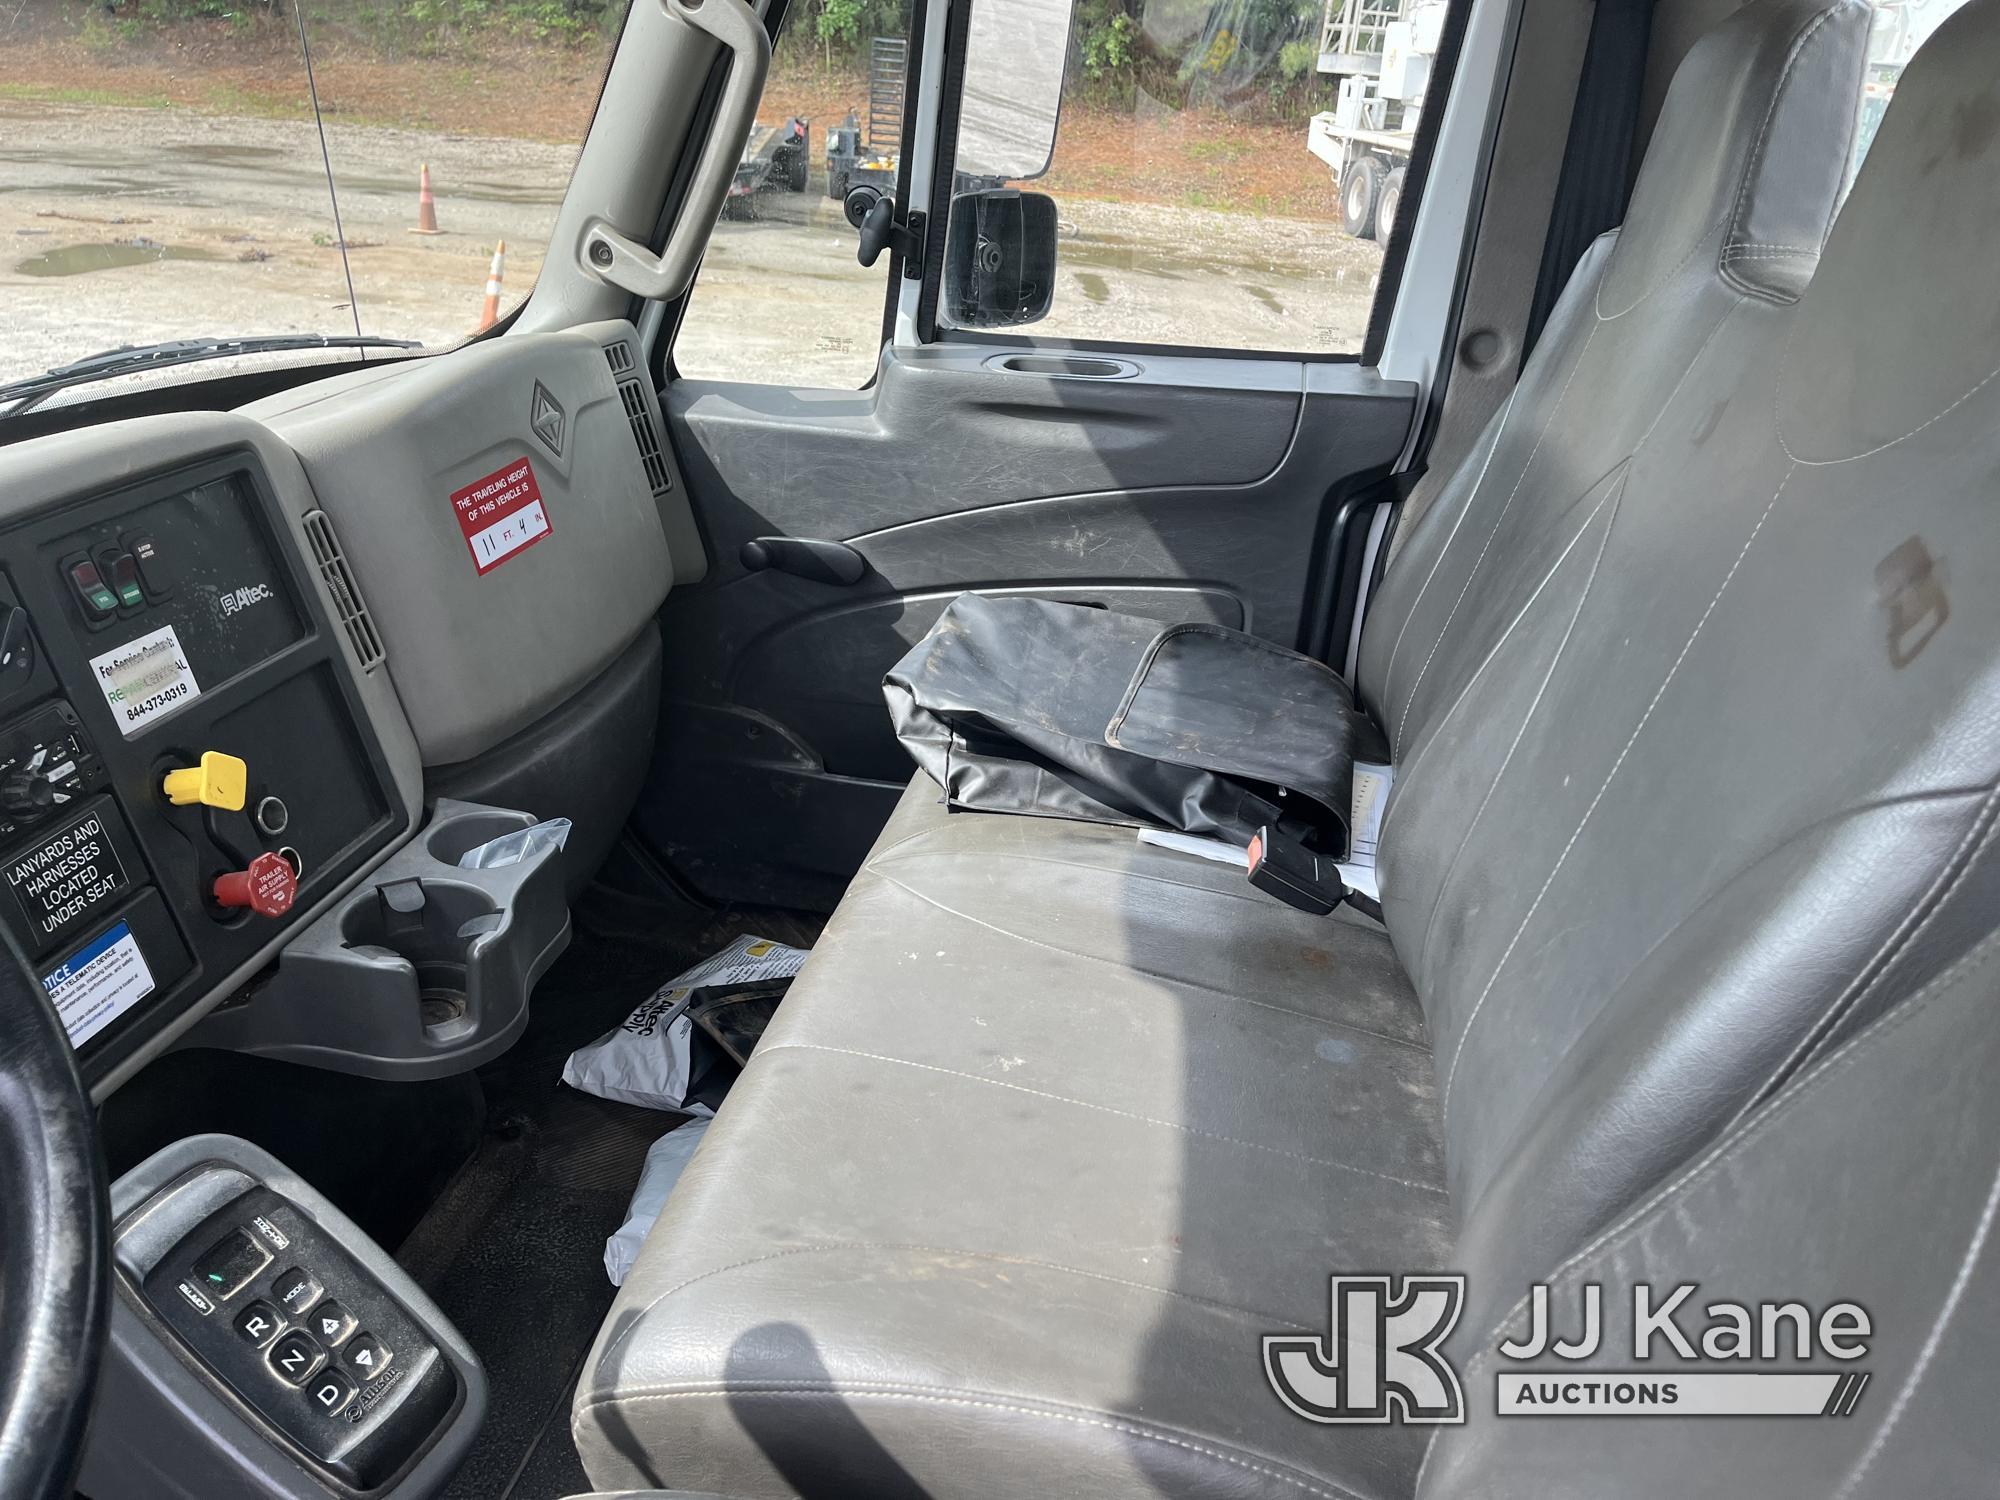 (Chester, VA) Altec AM55-MH, Over-Center Material Handling Bucket Truck rear mounted on 2018 Interna